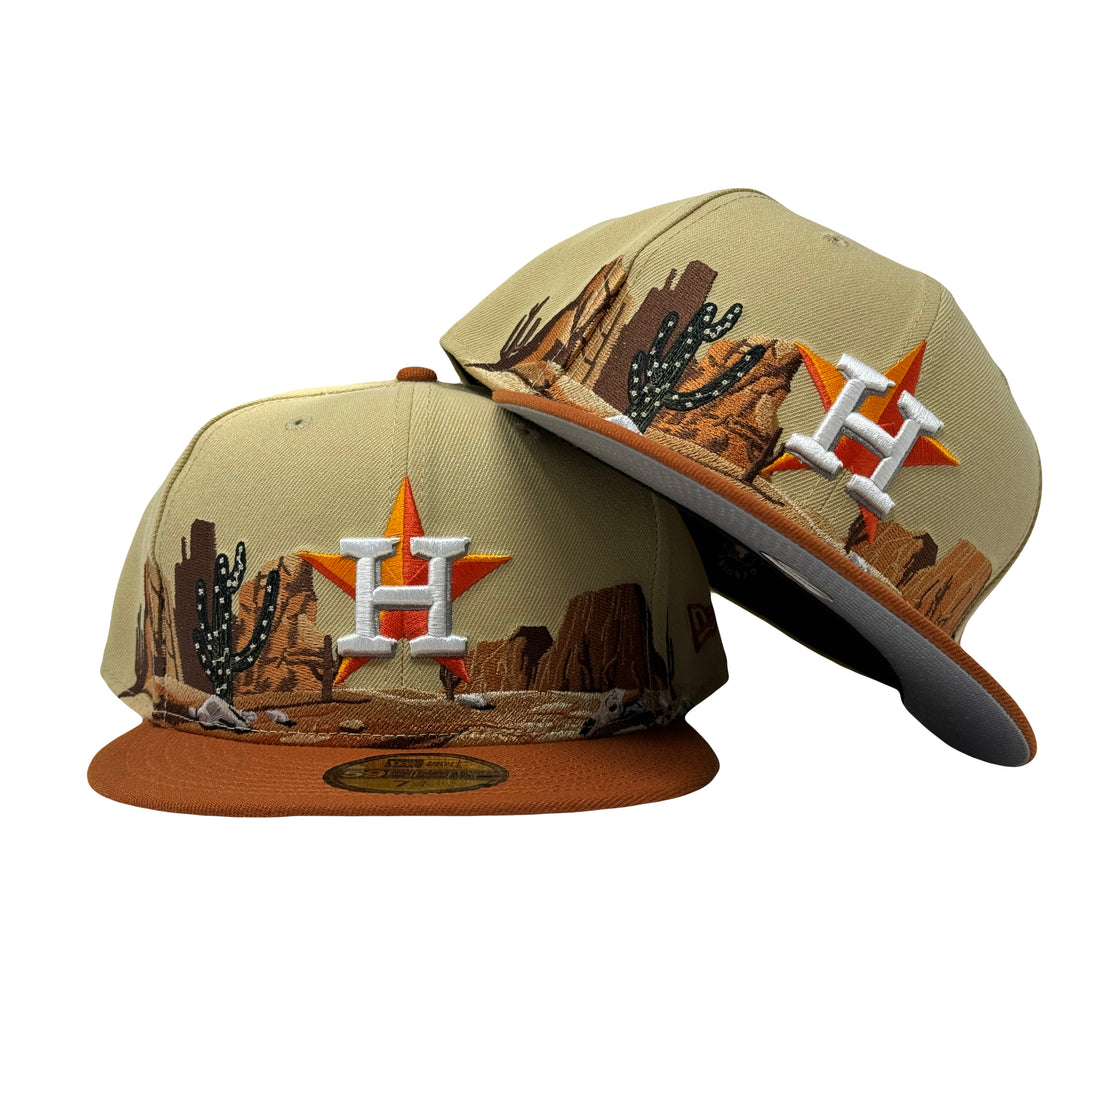 Houston Astros Desert Pack 5950 New Era Fitted Hat